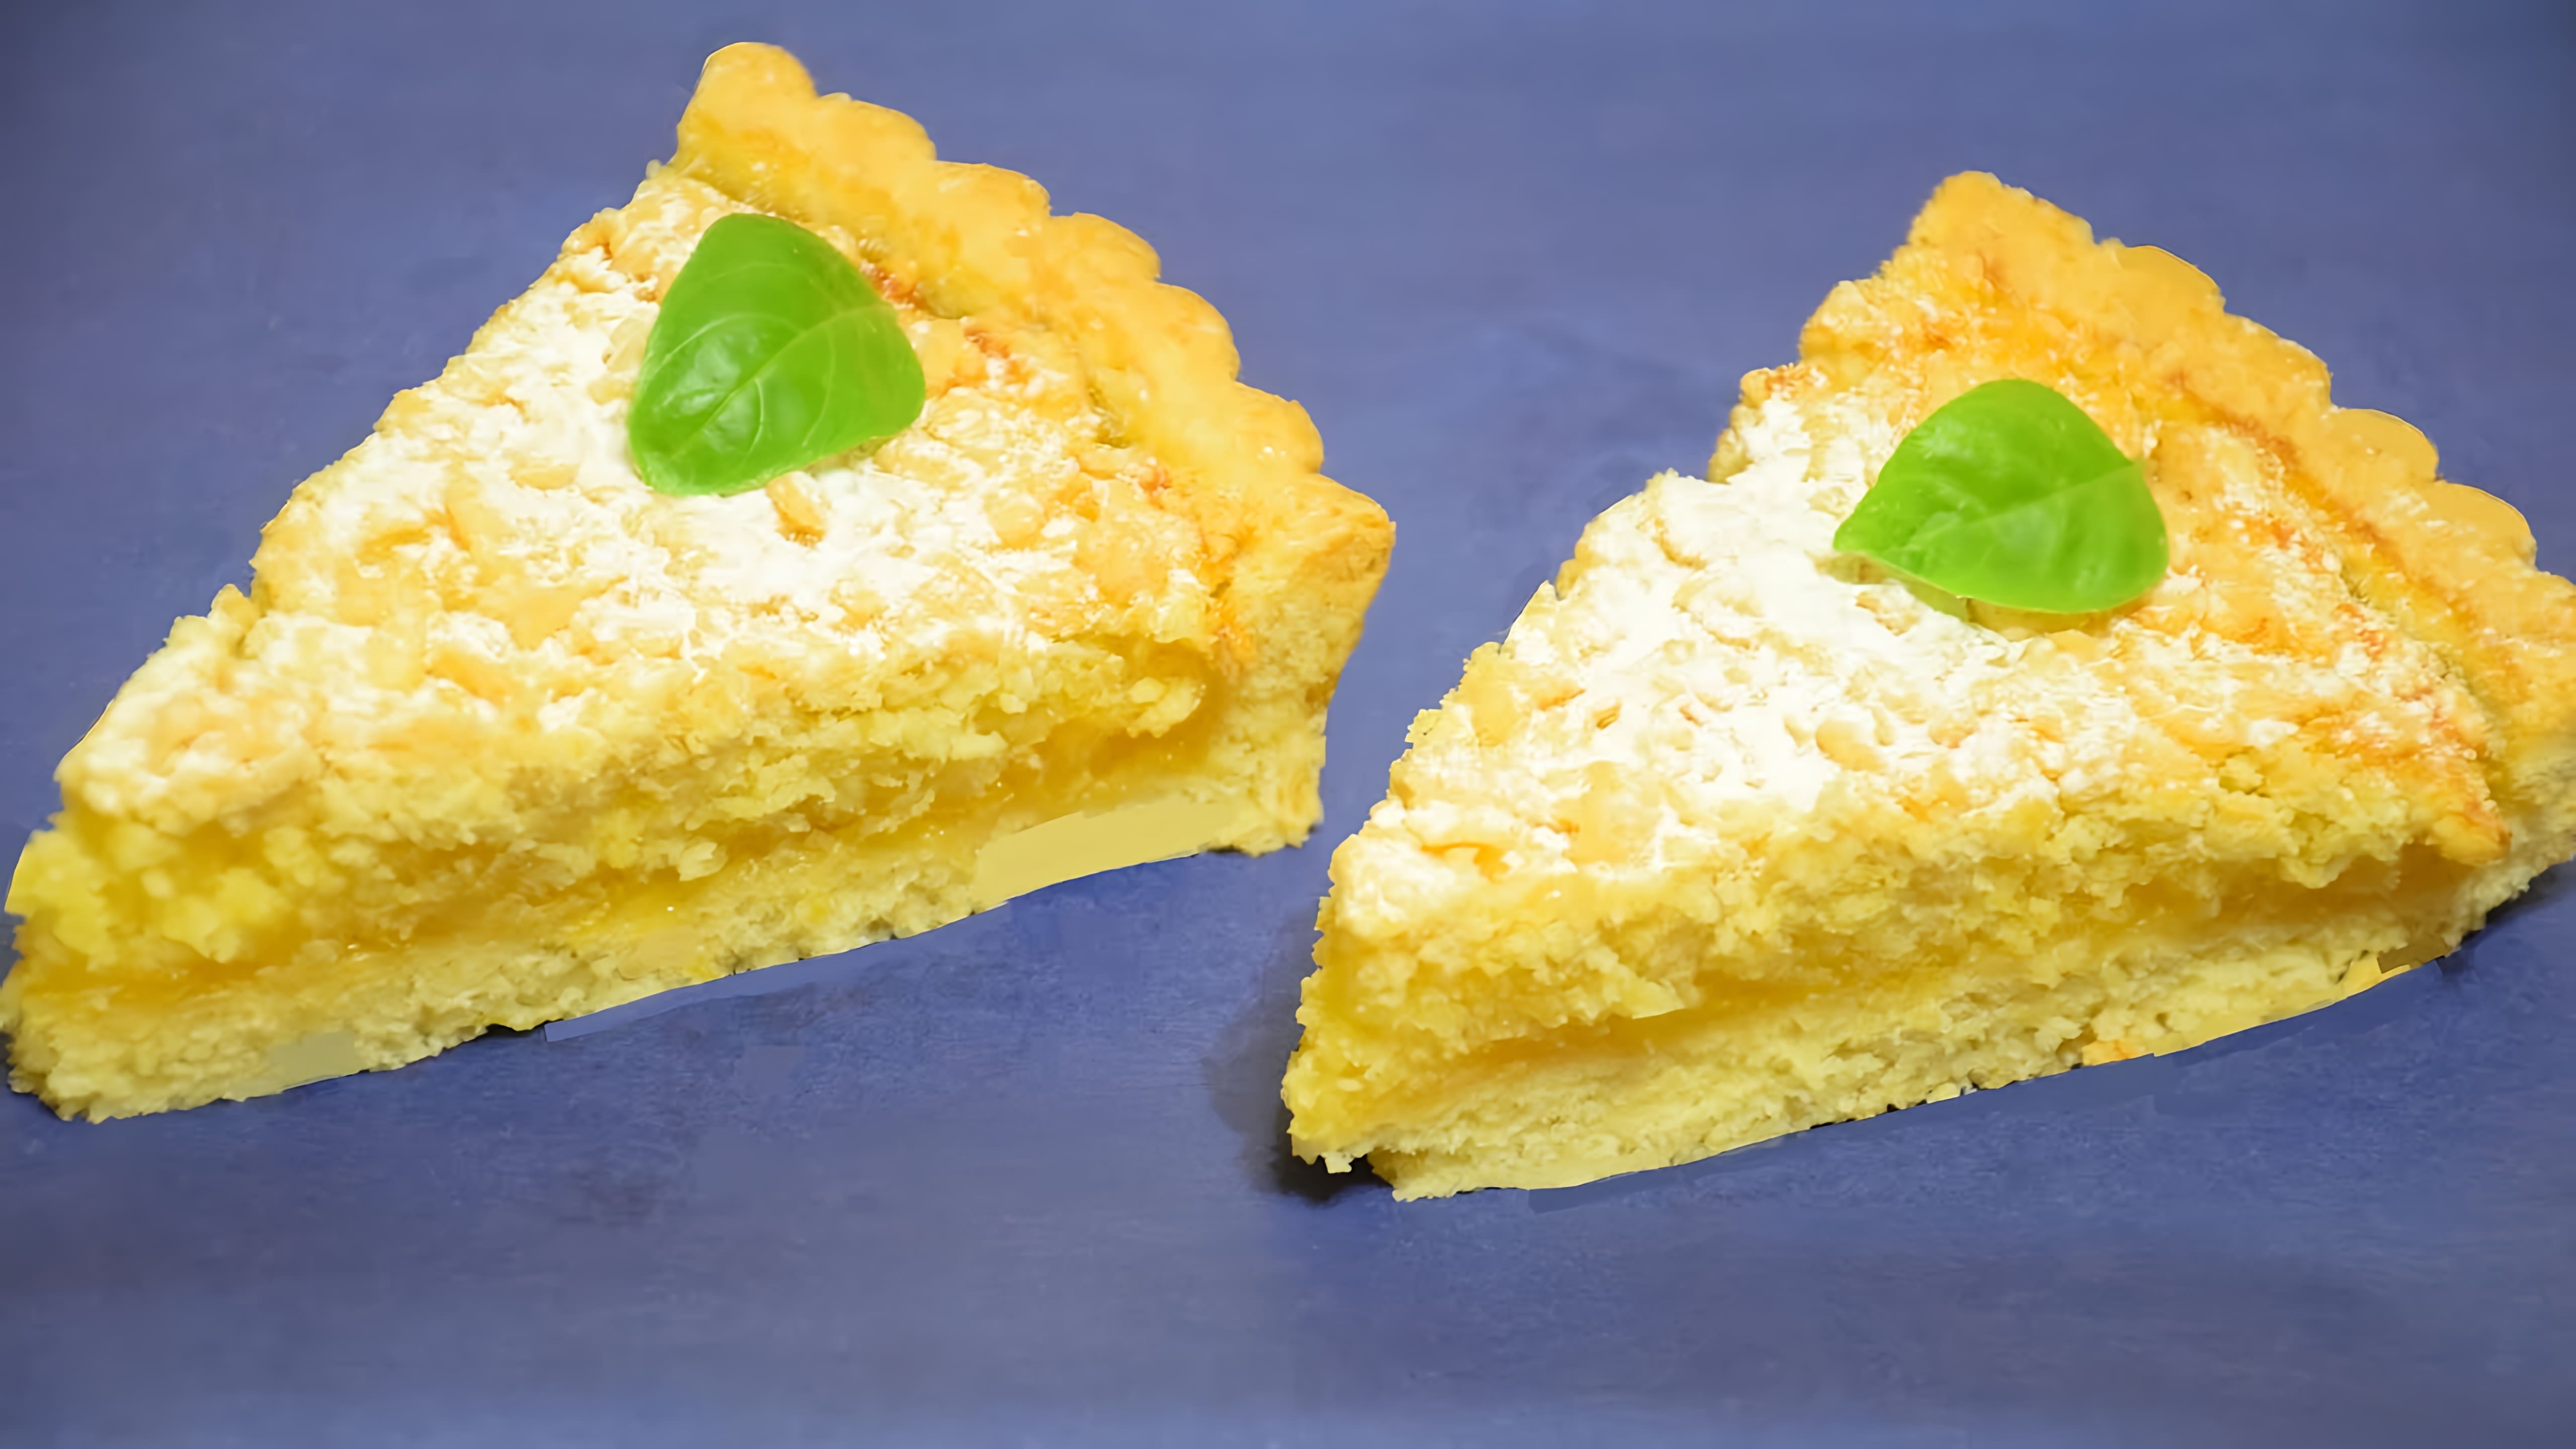 В этом видео демонстрируется процесс приготовления лимонного пирога "Райский"